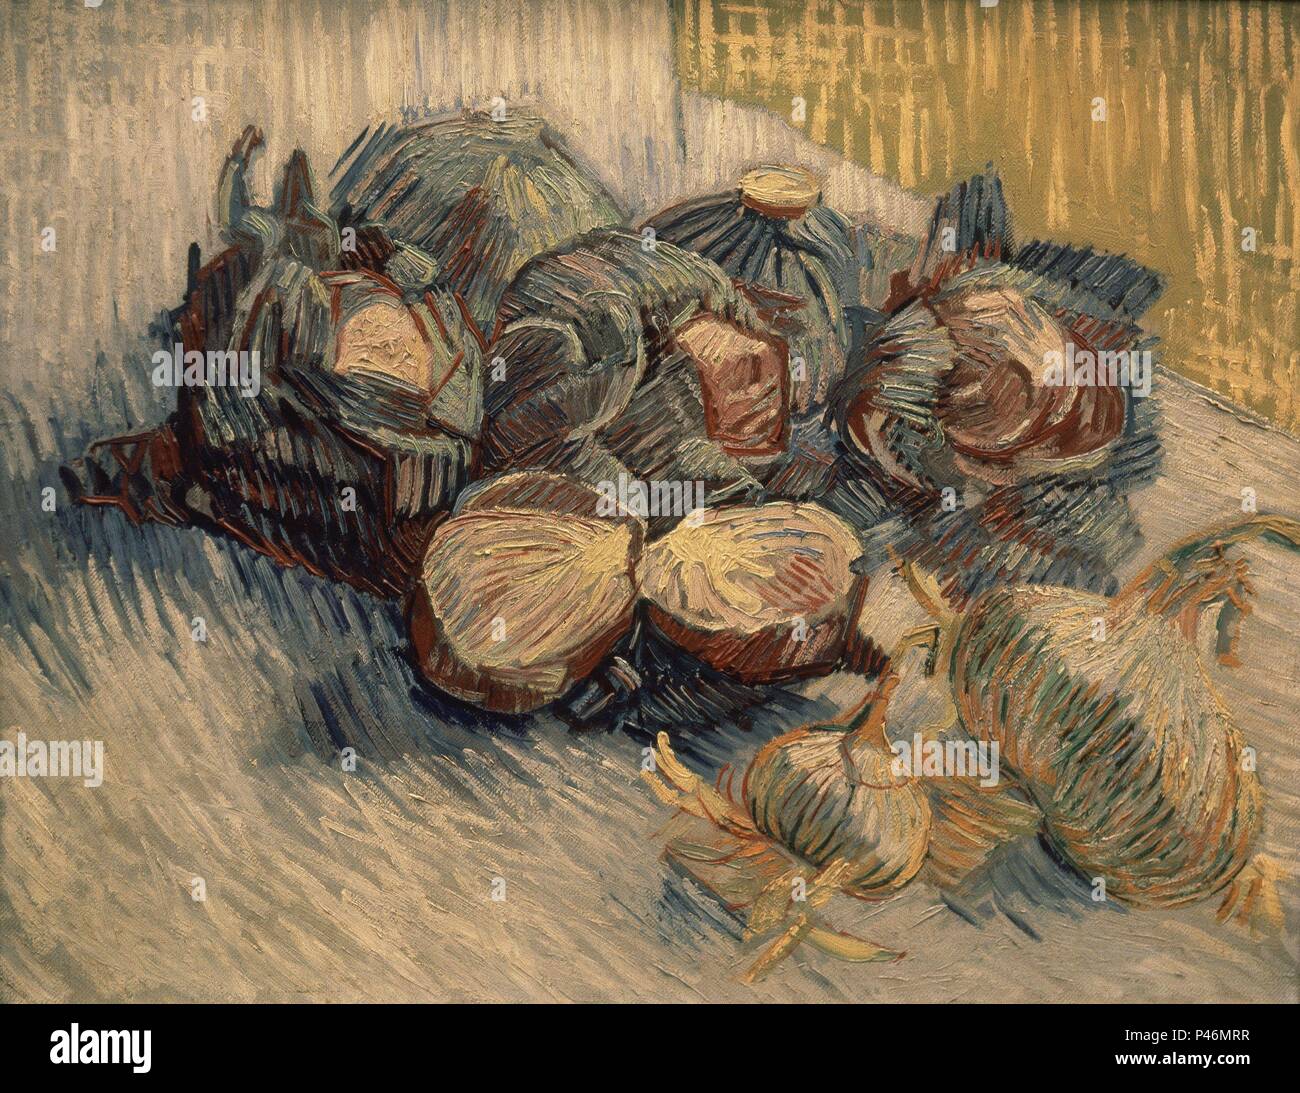 Niederländische Schule. Stillleben mit Rotkohl und Zwiebeln. 1887. Öl auf Leinwand (50 x 64,5 cm). Amsterdam, Van Gogh Museum. Autor: Vincent van Gogh (1853-1890). Ort: Van Gogh Museum, Amsterdam, HOLANDA. Stockfoto